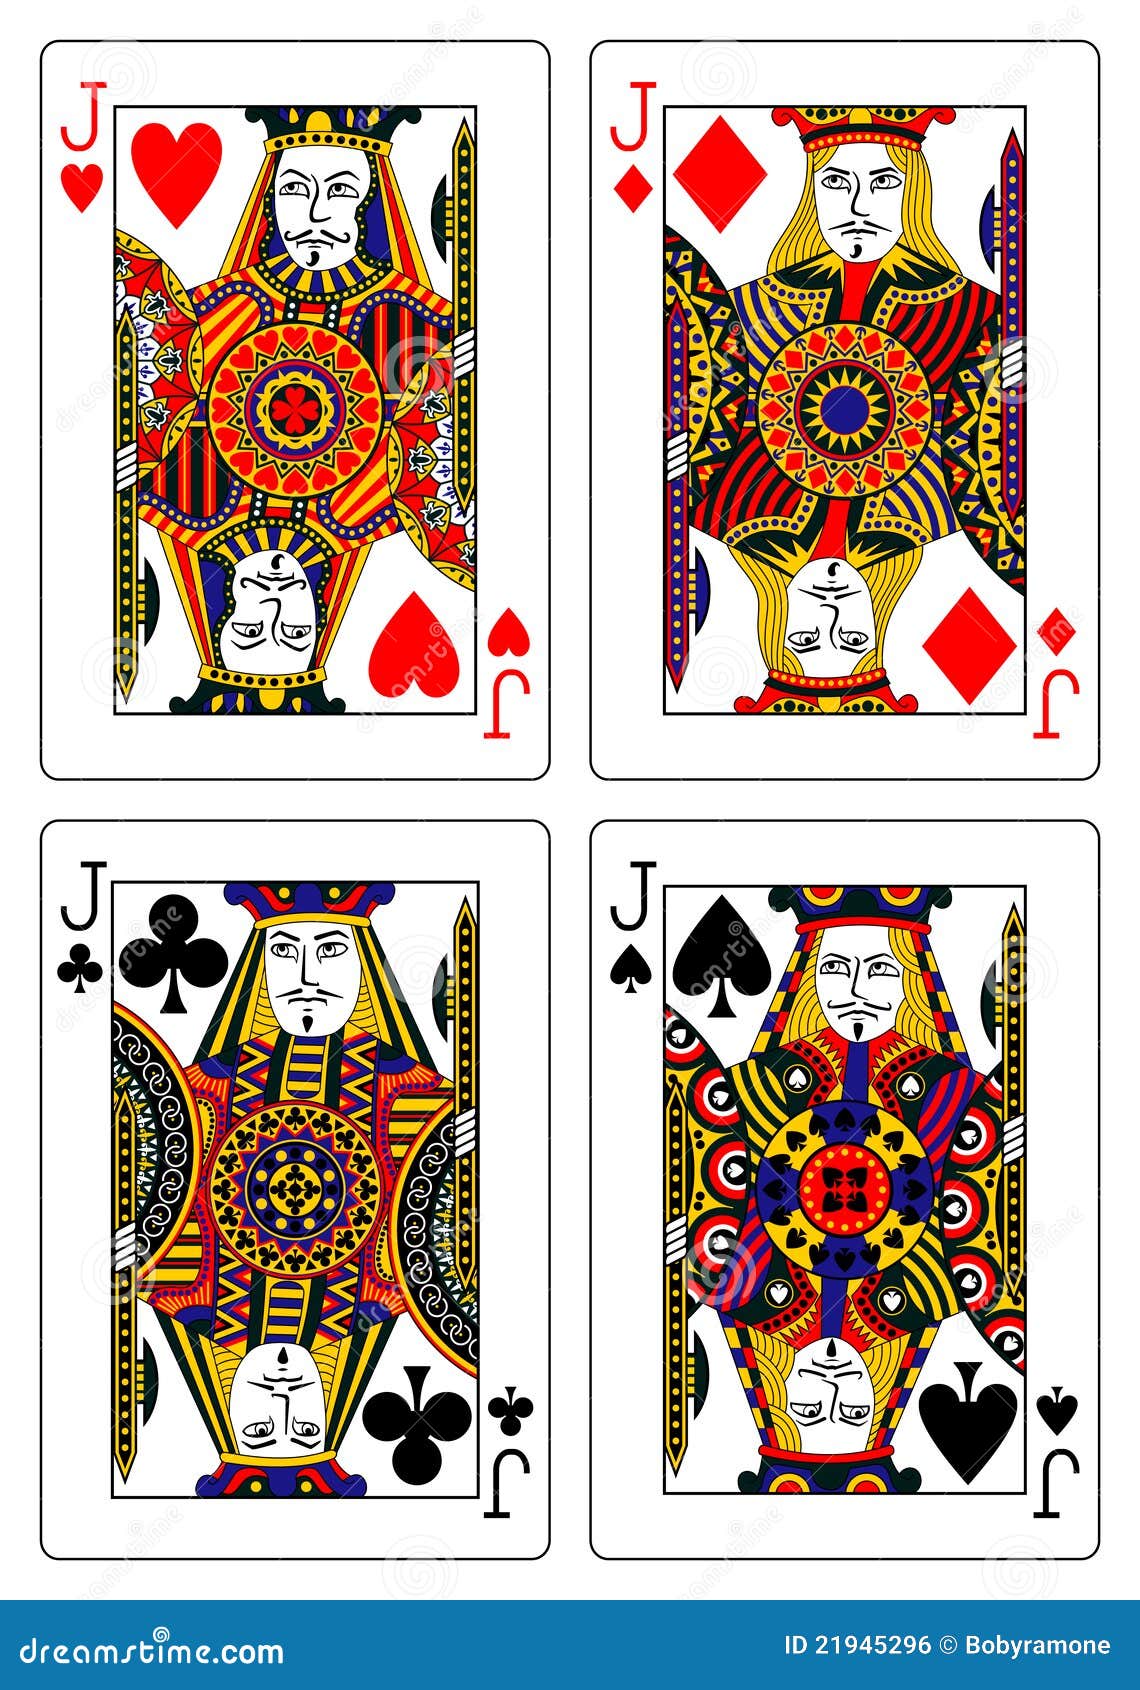 Playing Card Jacks